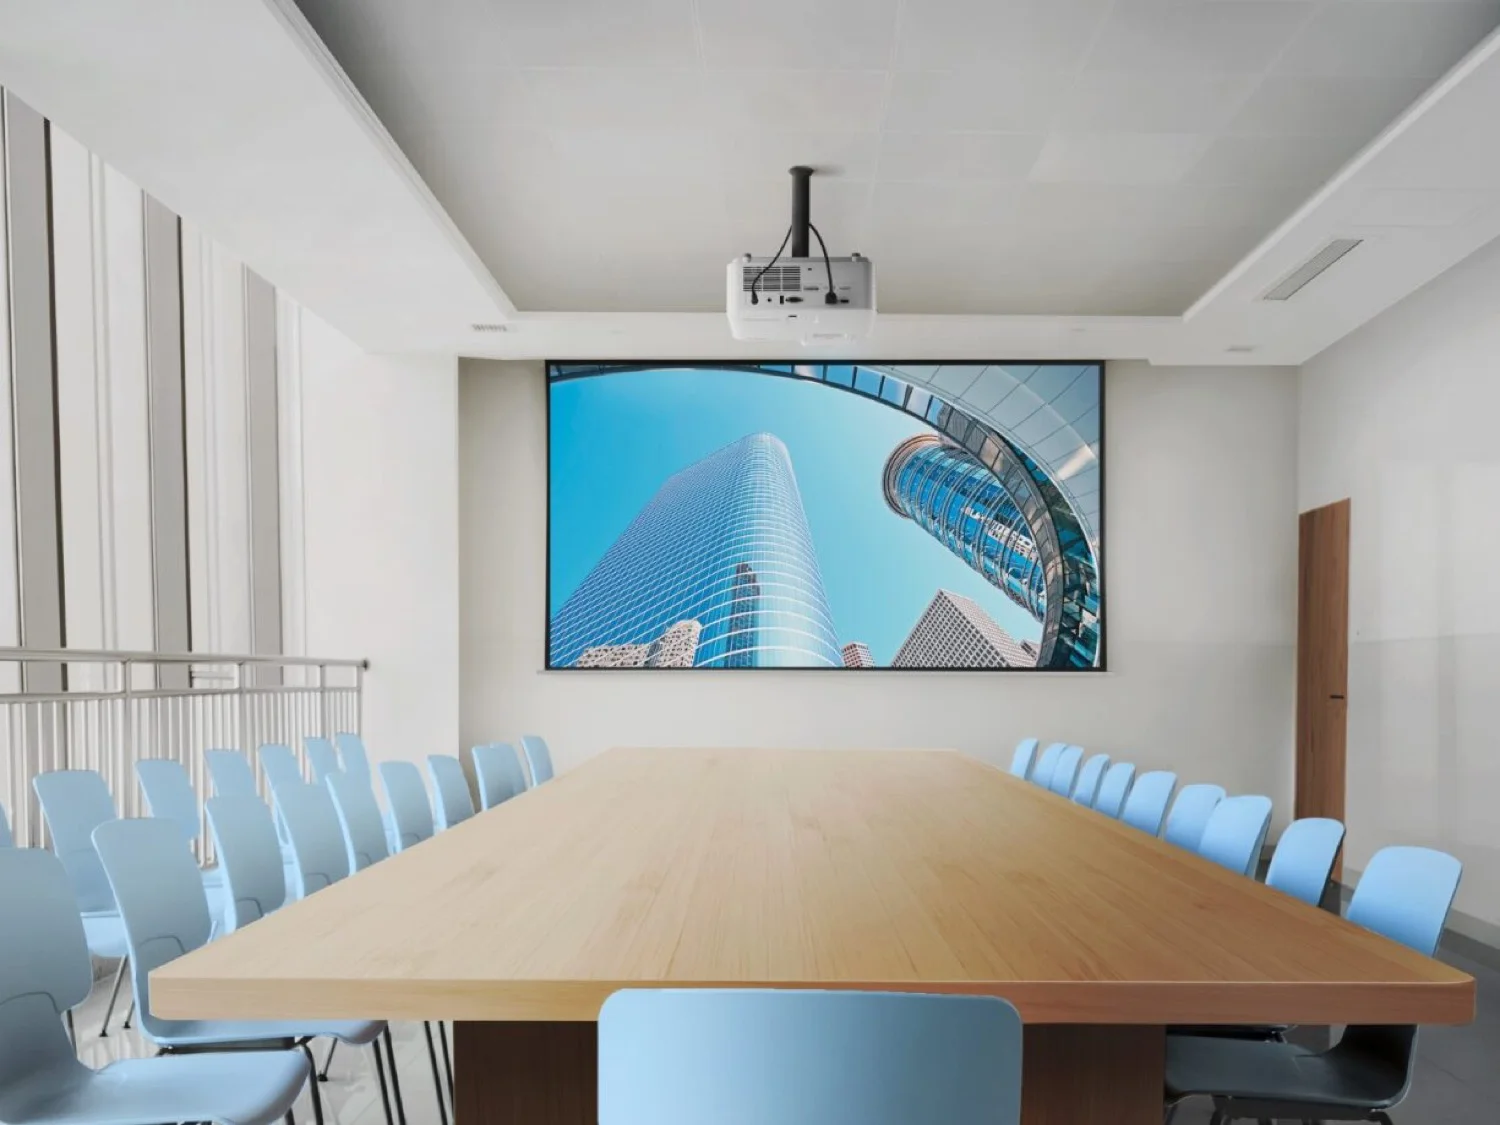 ViewSonic presenta proyectores láser de bajo costo